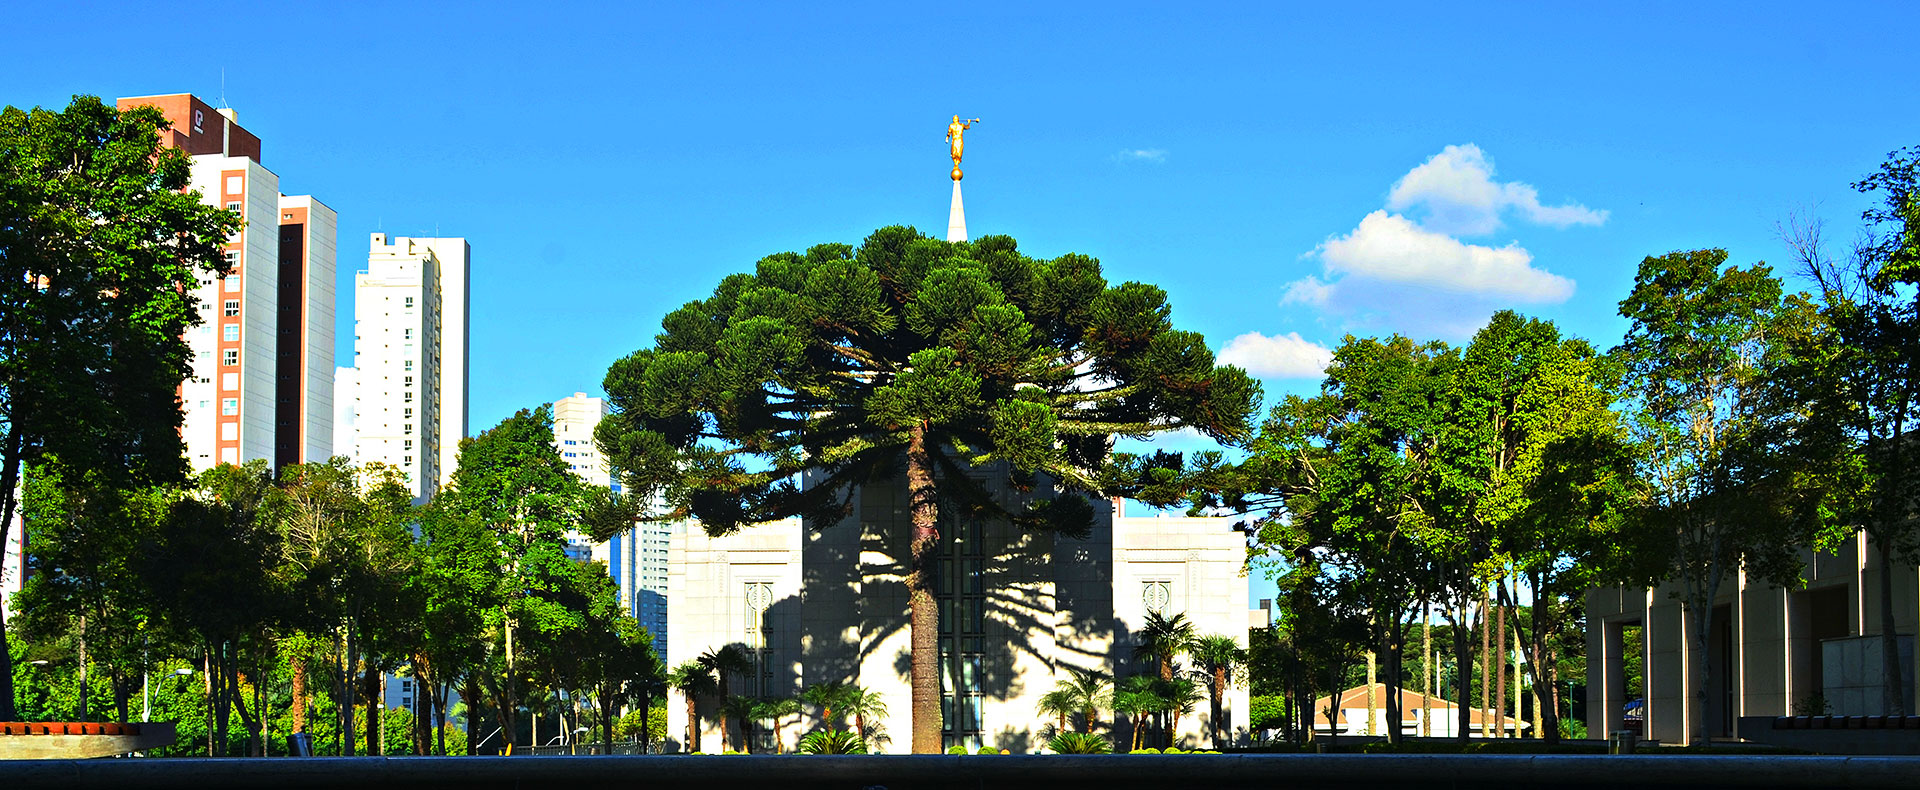 Curitiba Brazil Temple